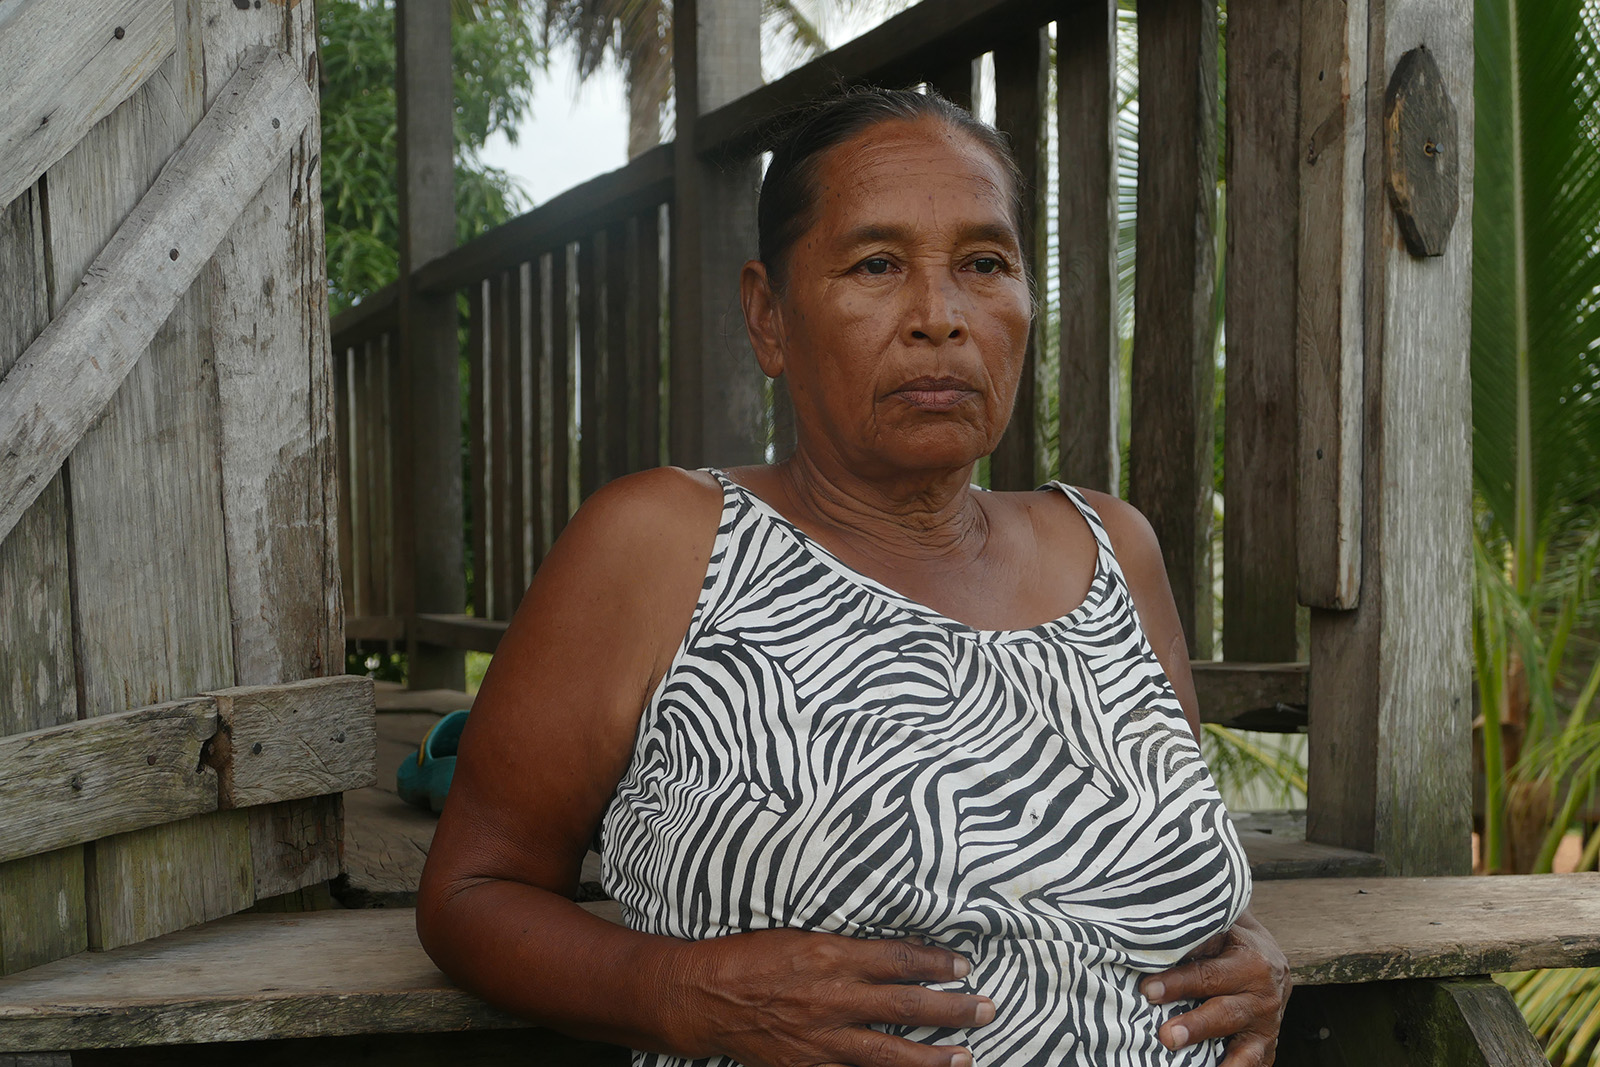 La inseguridad para las mujeres en el Caribe de Nicaragua aumenta, debido a la impunidad que existe en este territorio.